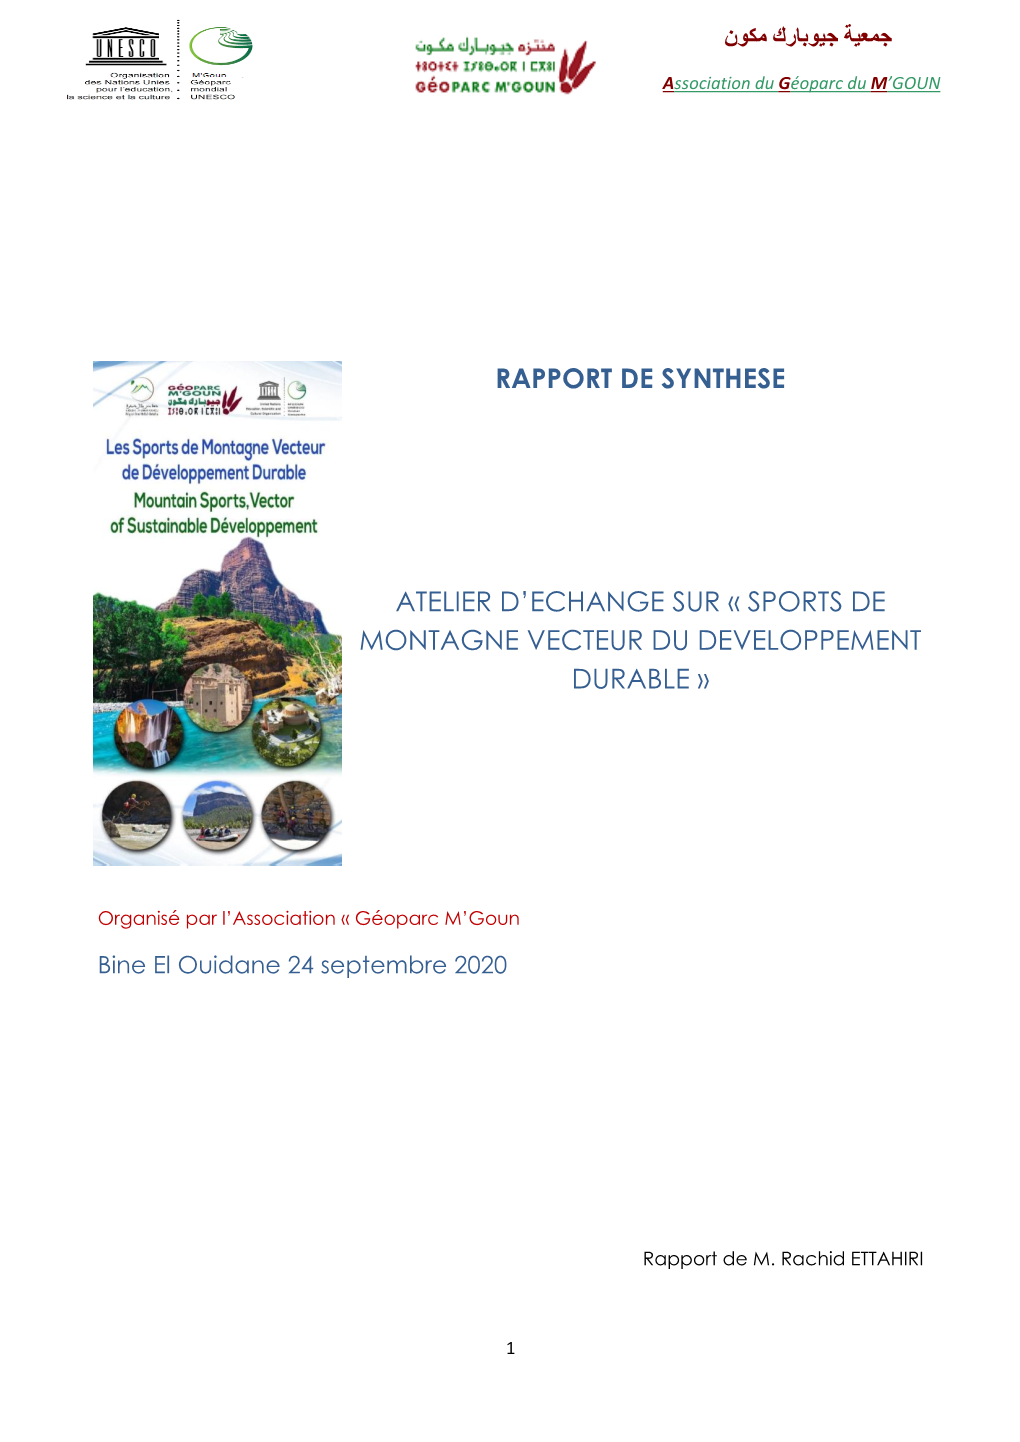 Rapport De Synthese Atelier D'echange Sur « Sports De Montagne Vecteur